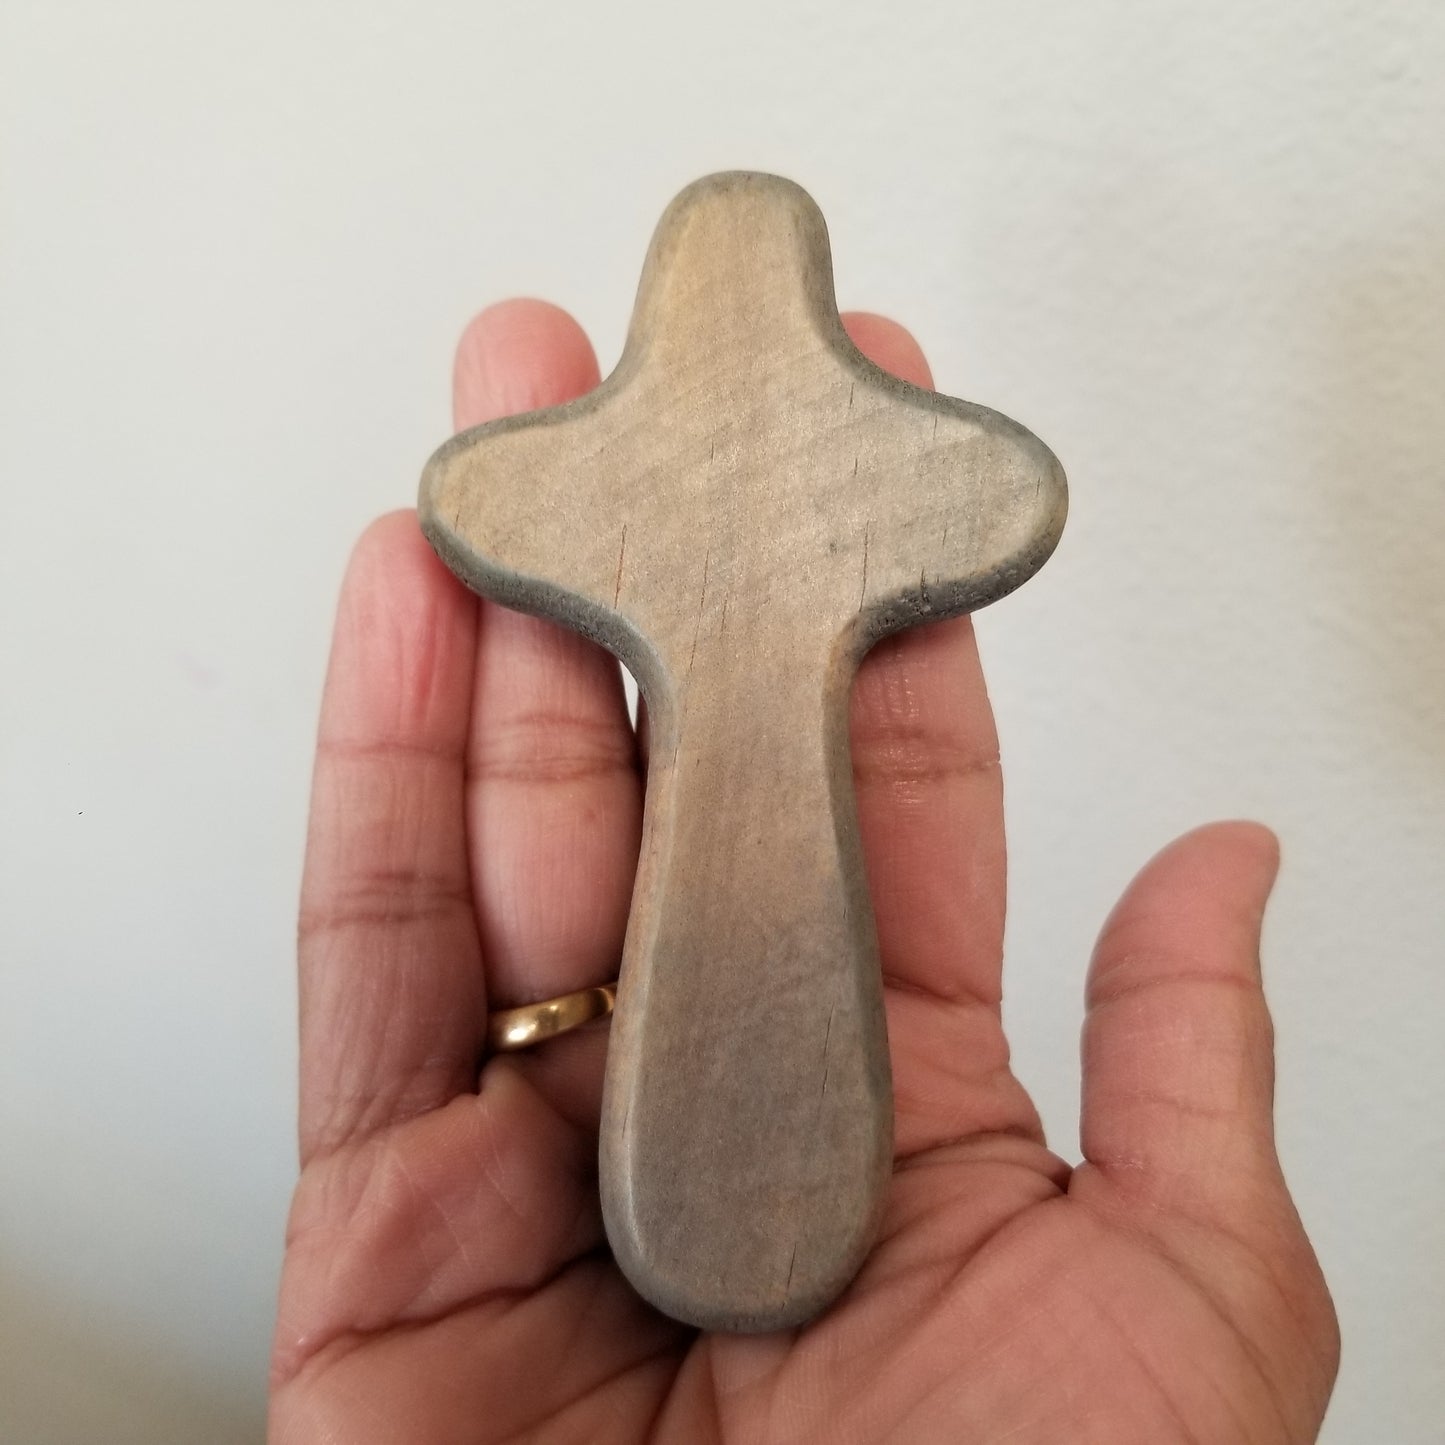 Wooden Comfort Cross - Hand Held Cross